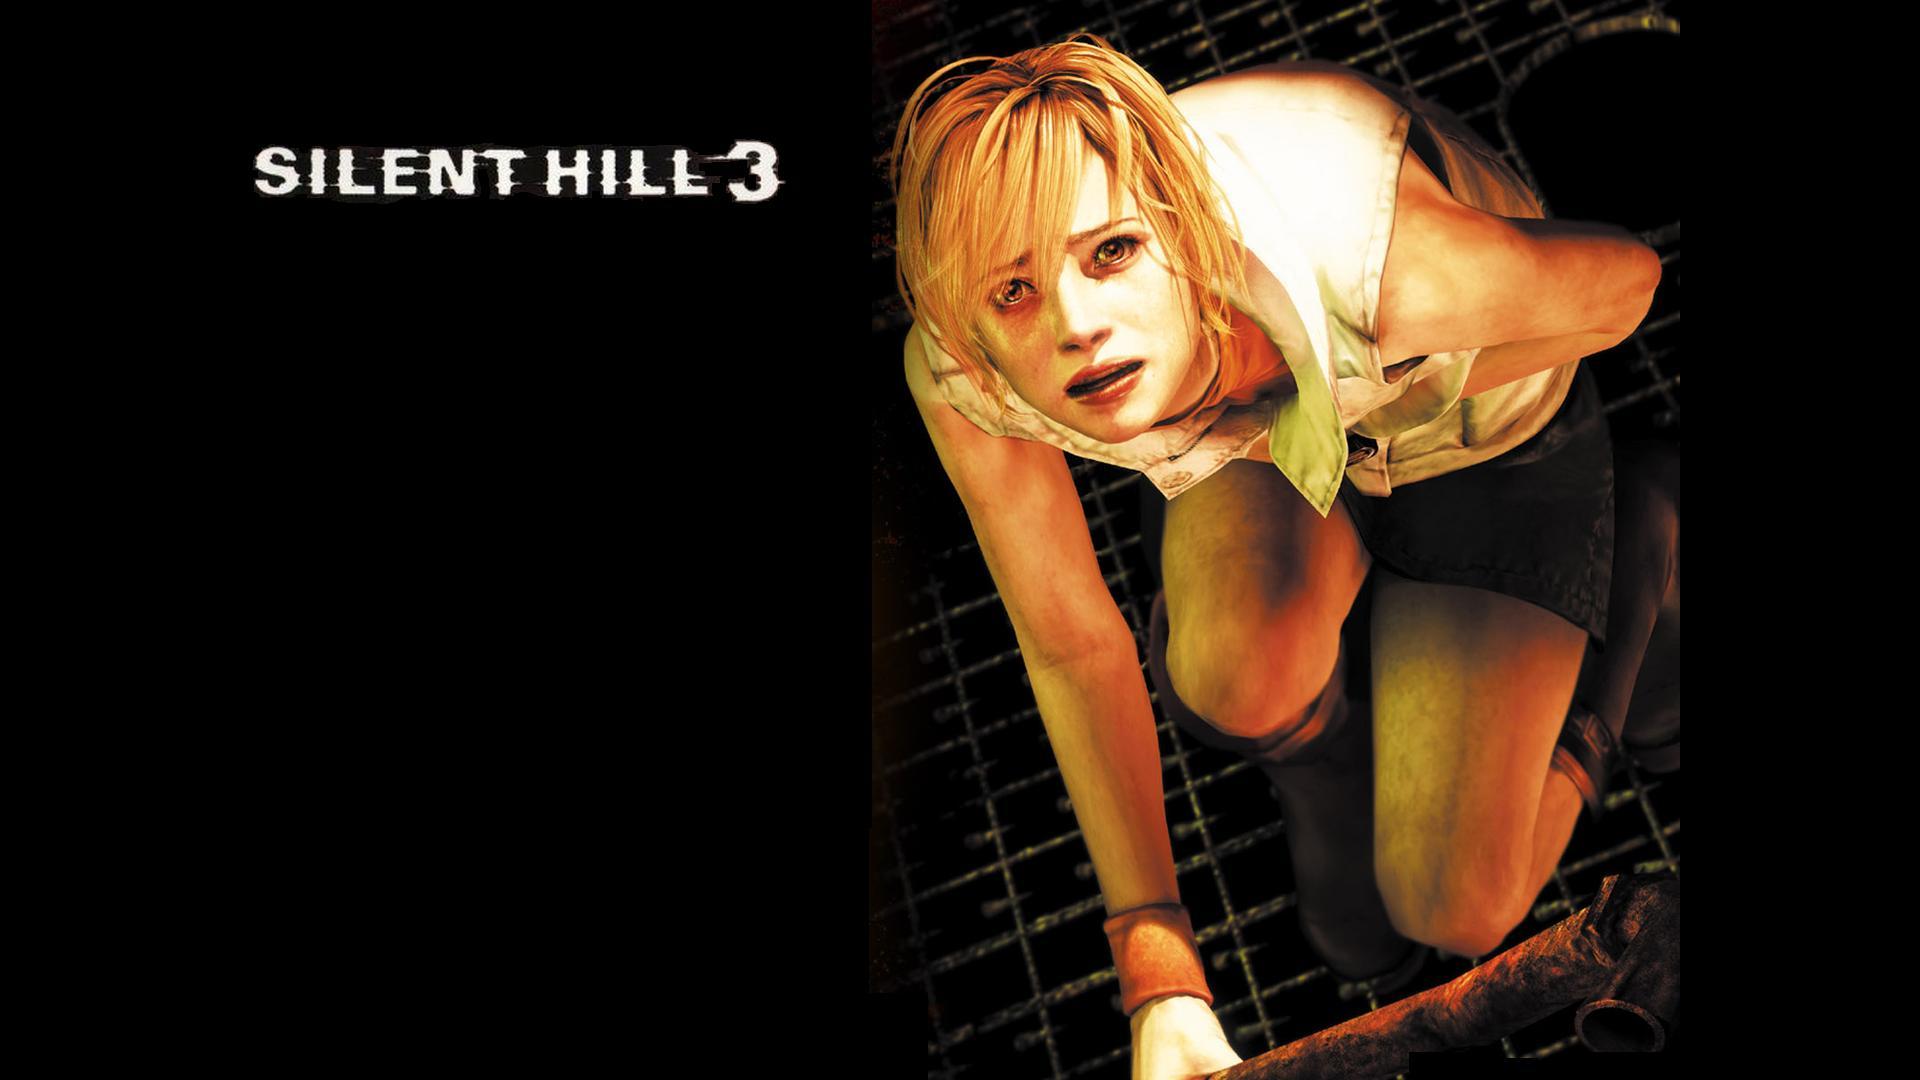 Wallpaper For > Silent Hill 3 Wallpaper HD